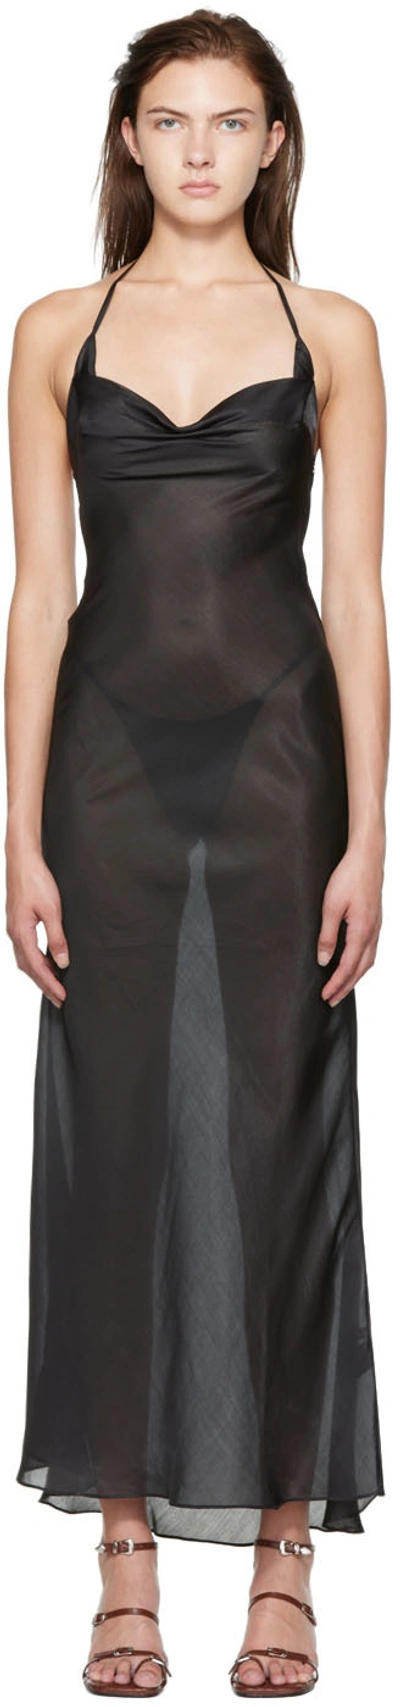 Shop Danielle Guizio Ssense Exclusive Black Maxi Dress